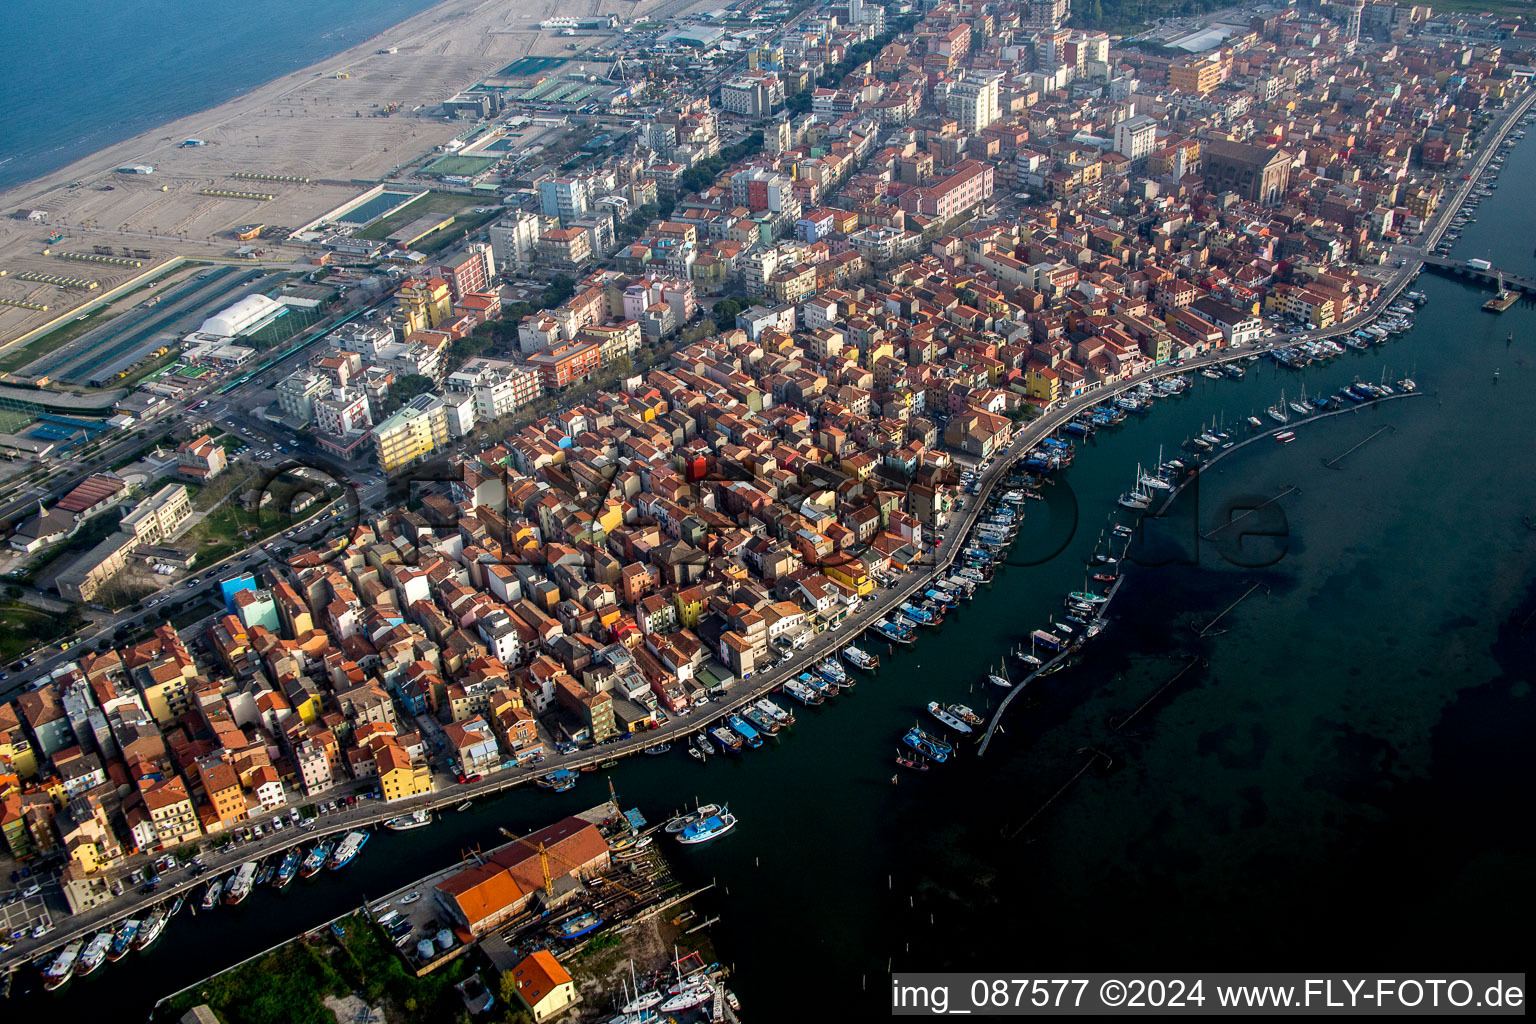 Port facilities on the seashore of the Lagune von Venedig in the district Sottomarina in Chioggia in Veneto, Italy